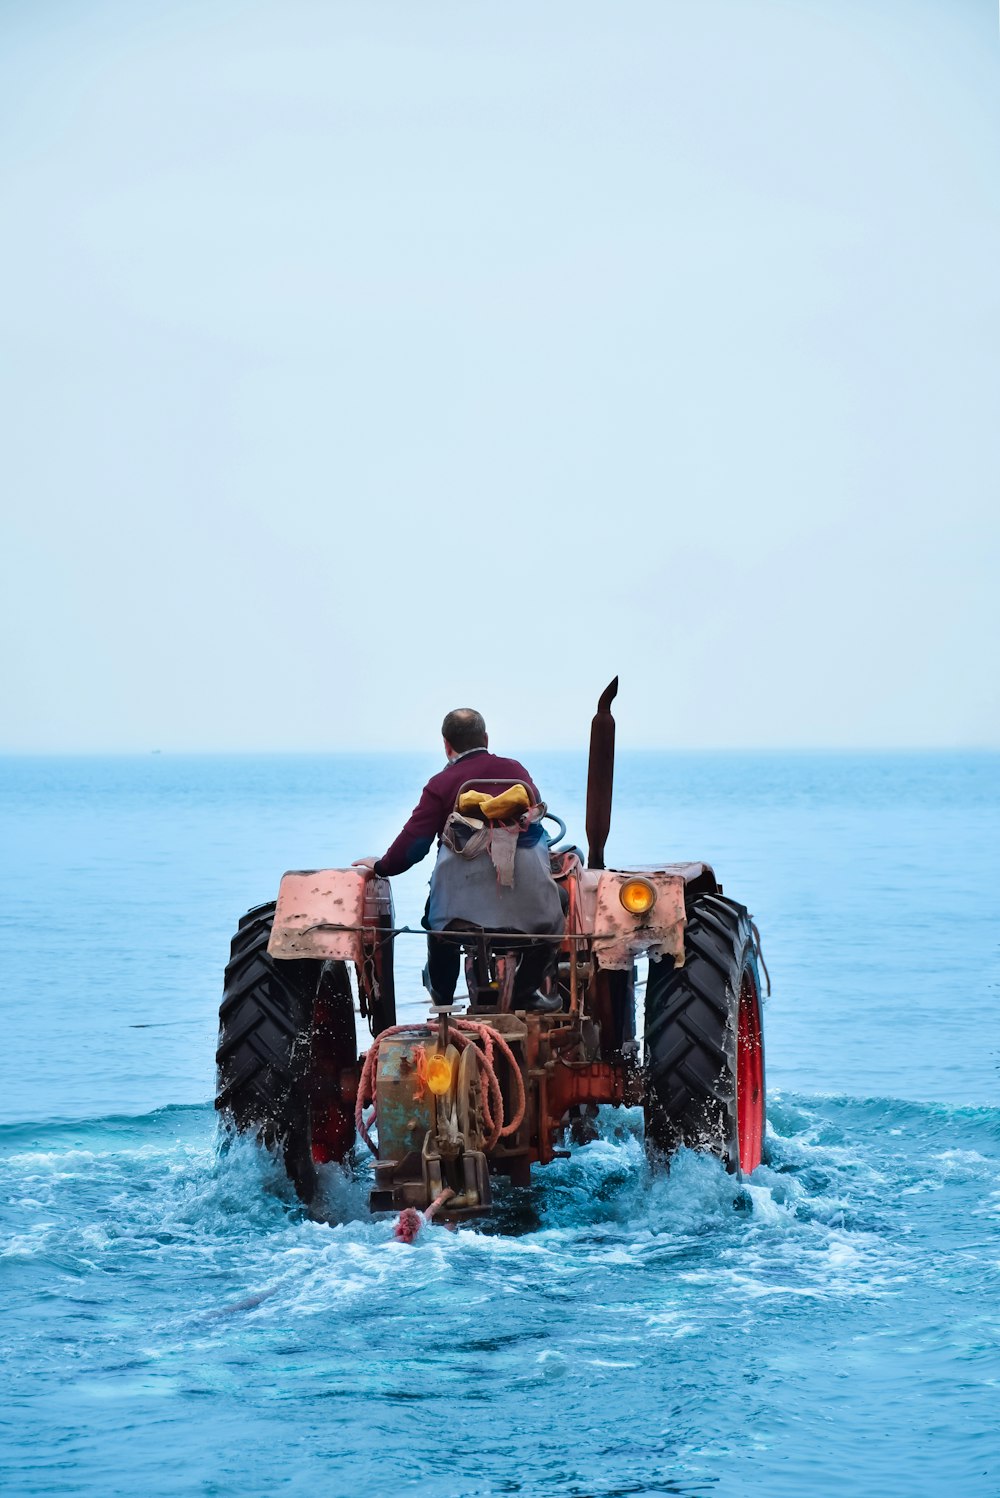 Ein Mann fährt auf der Ladefläche eines Traktors im Meer